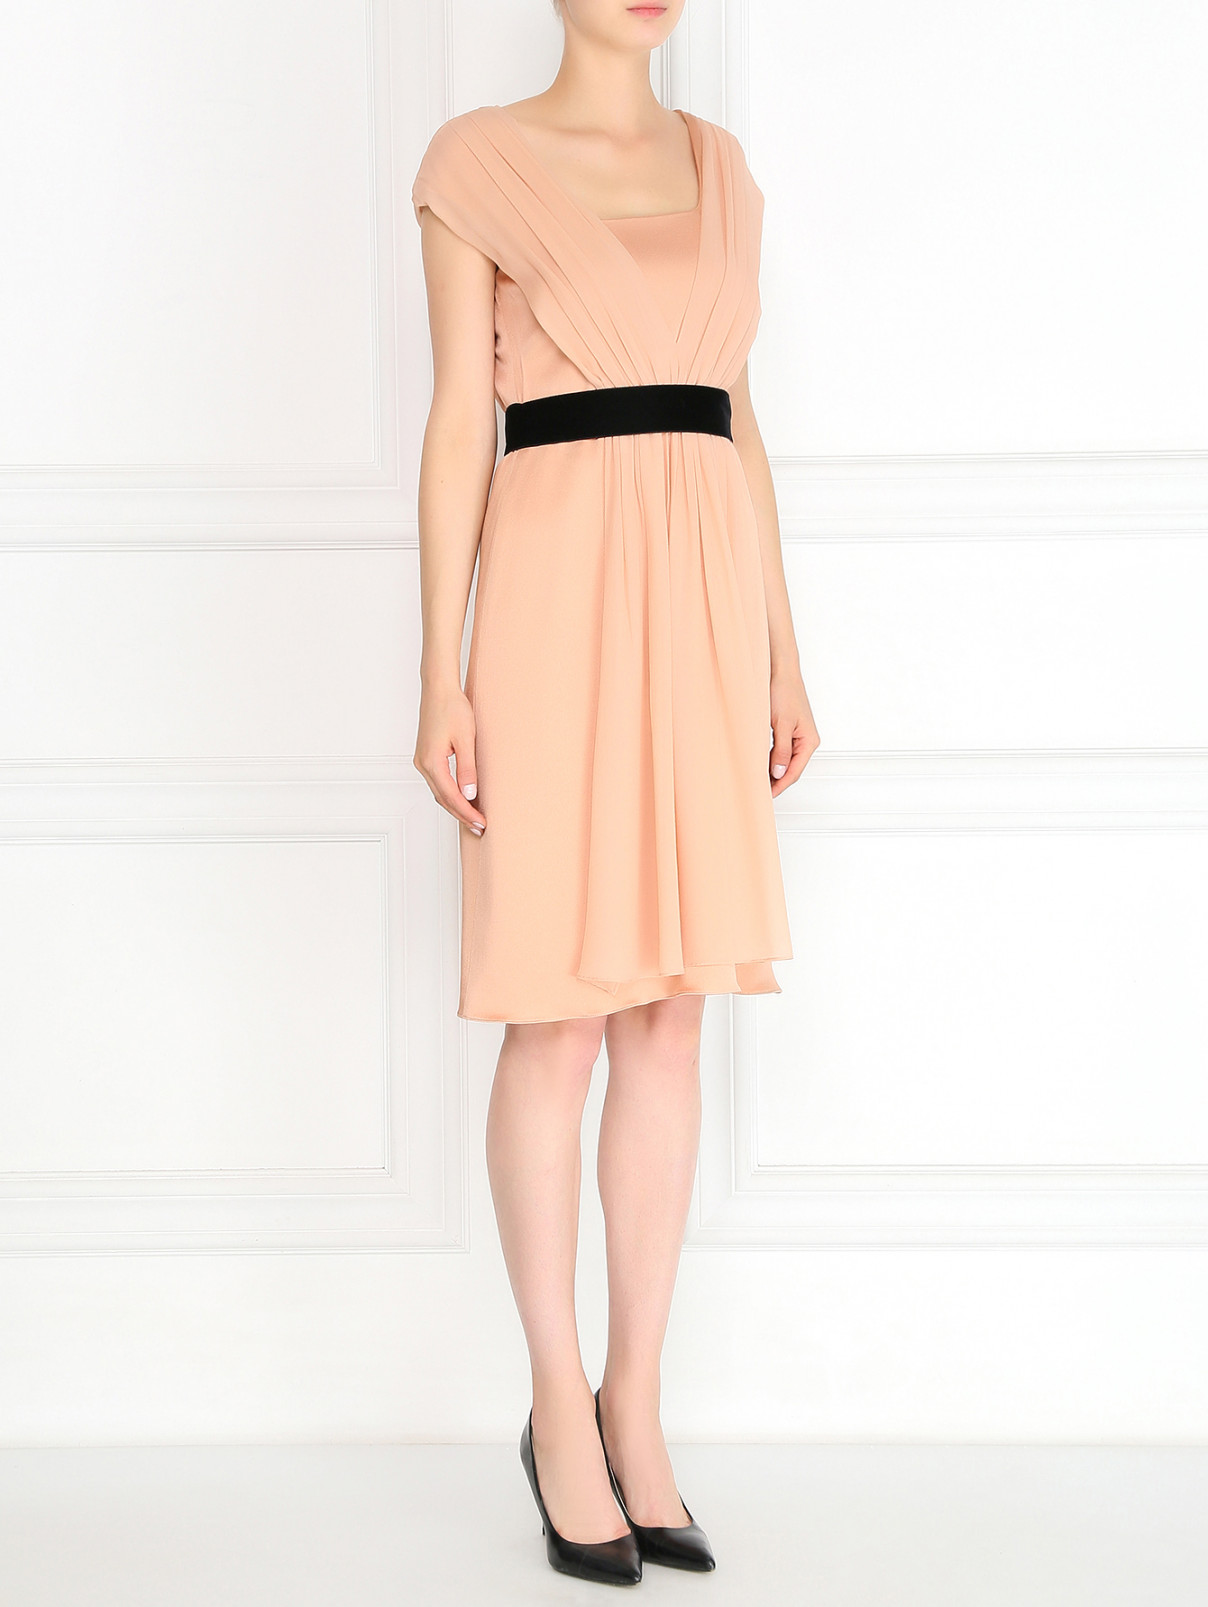 Платье с шелковой драпировкой и контрастным поясом Pianoforte  –  Модель Общий вид  – Цвет:  Розовый